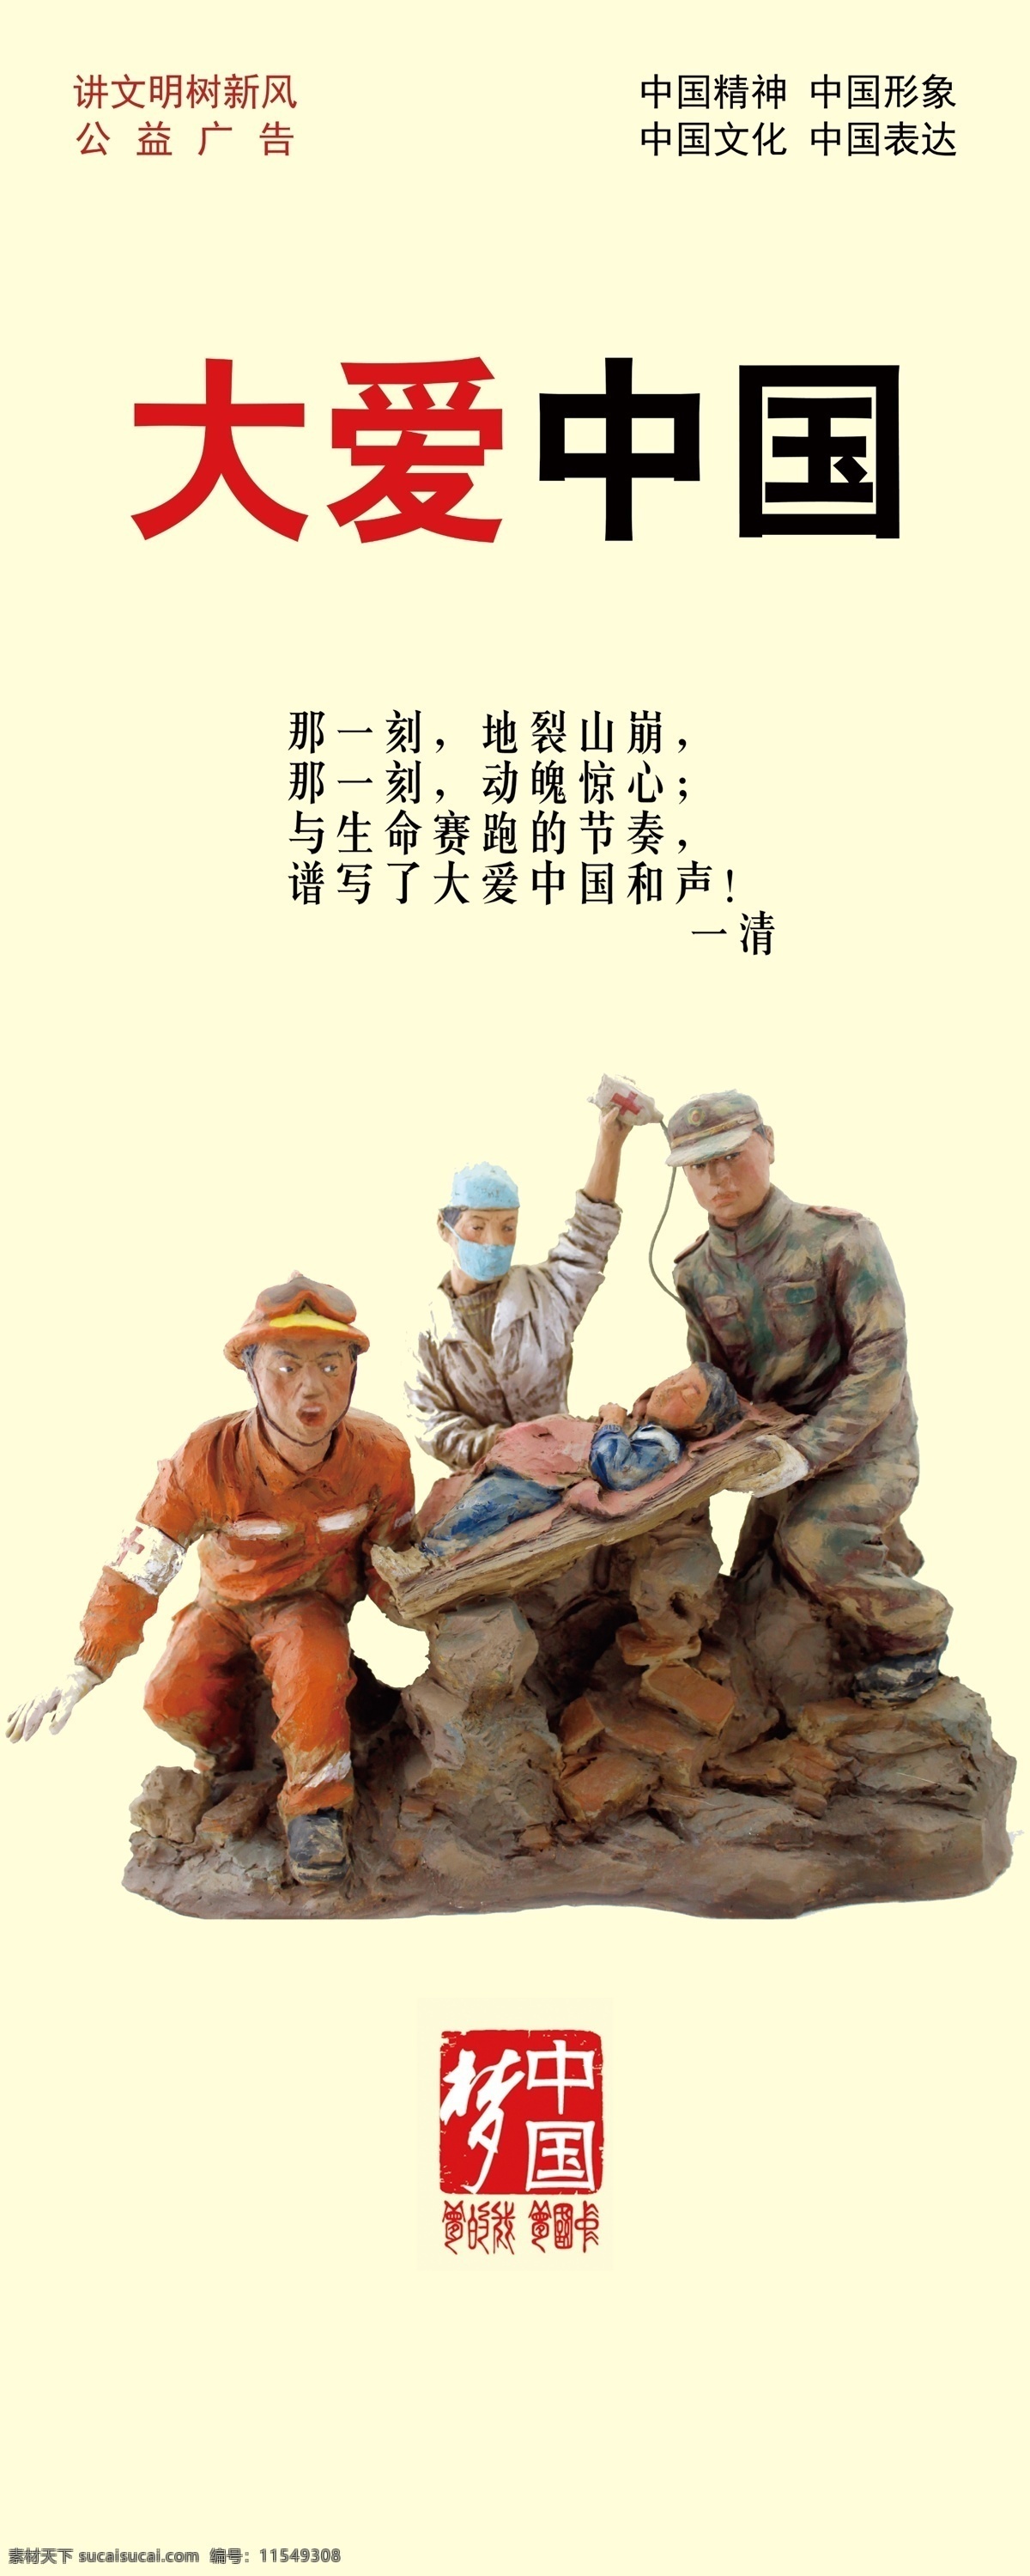 公益广告 传统美德 中华美德 讲文明树新风 精神文明 形象表达 中国梦 室外广告设计